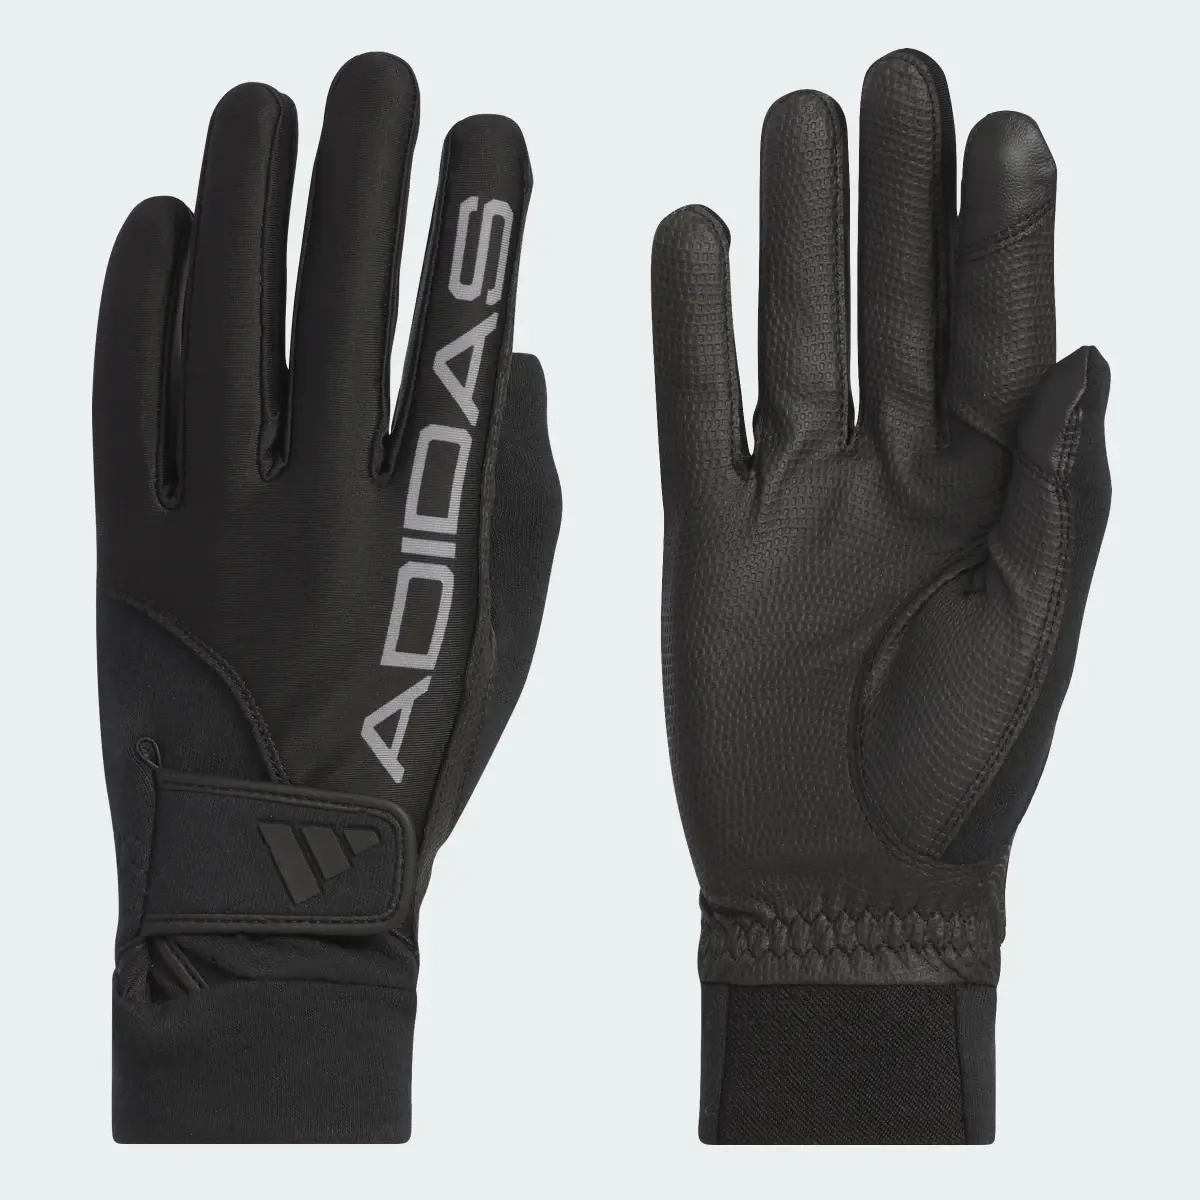 Adidas Warm Grip Comfort Gloves. 2